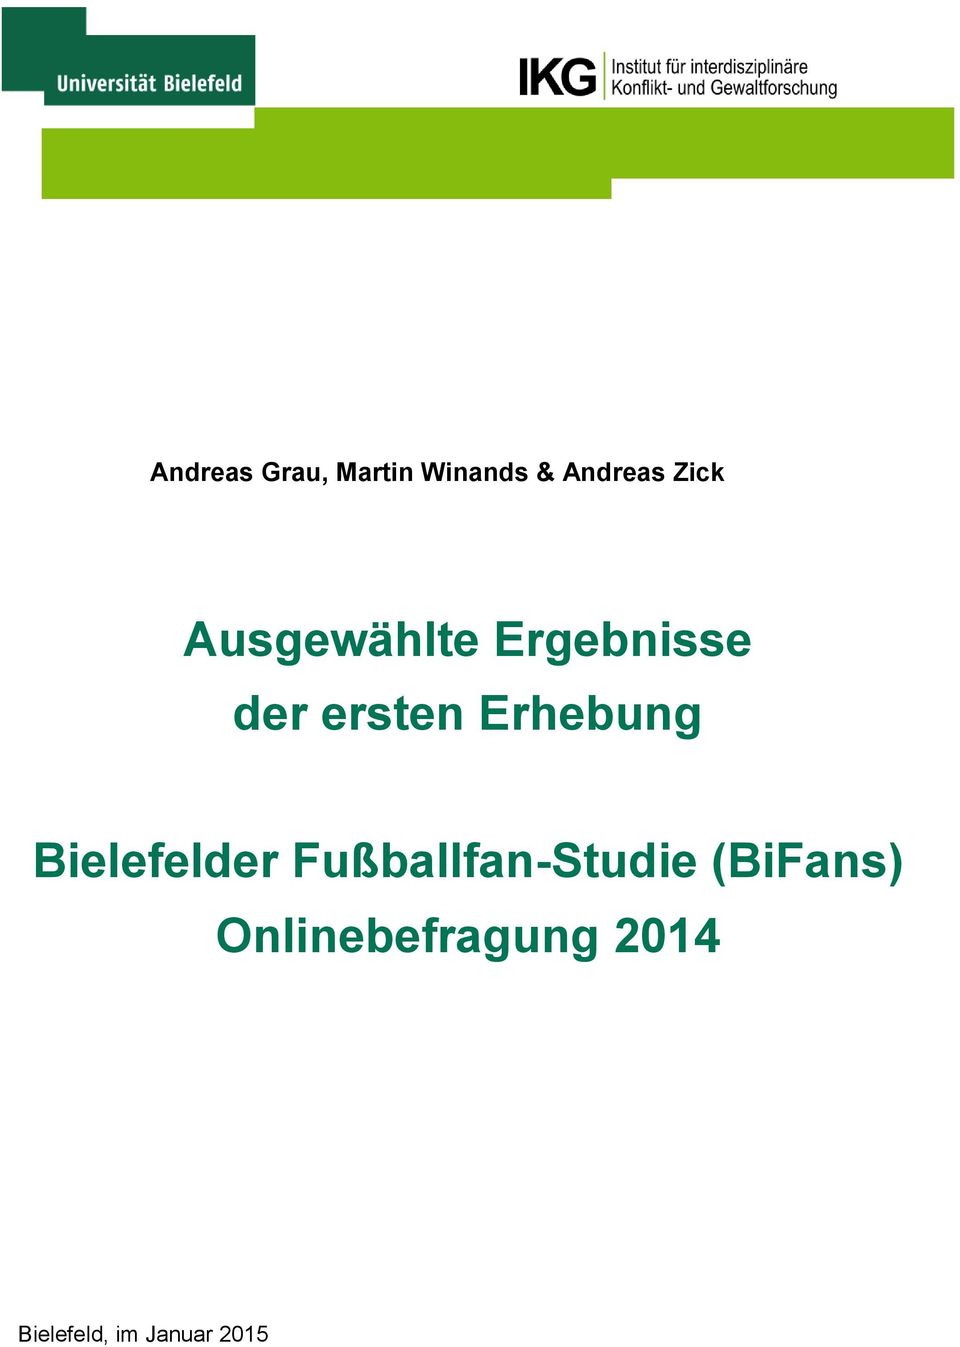 Erhebung Bielefelder Fußballfan-Studie